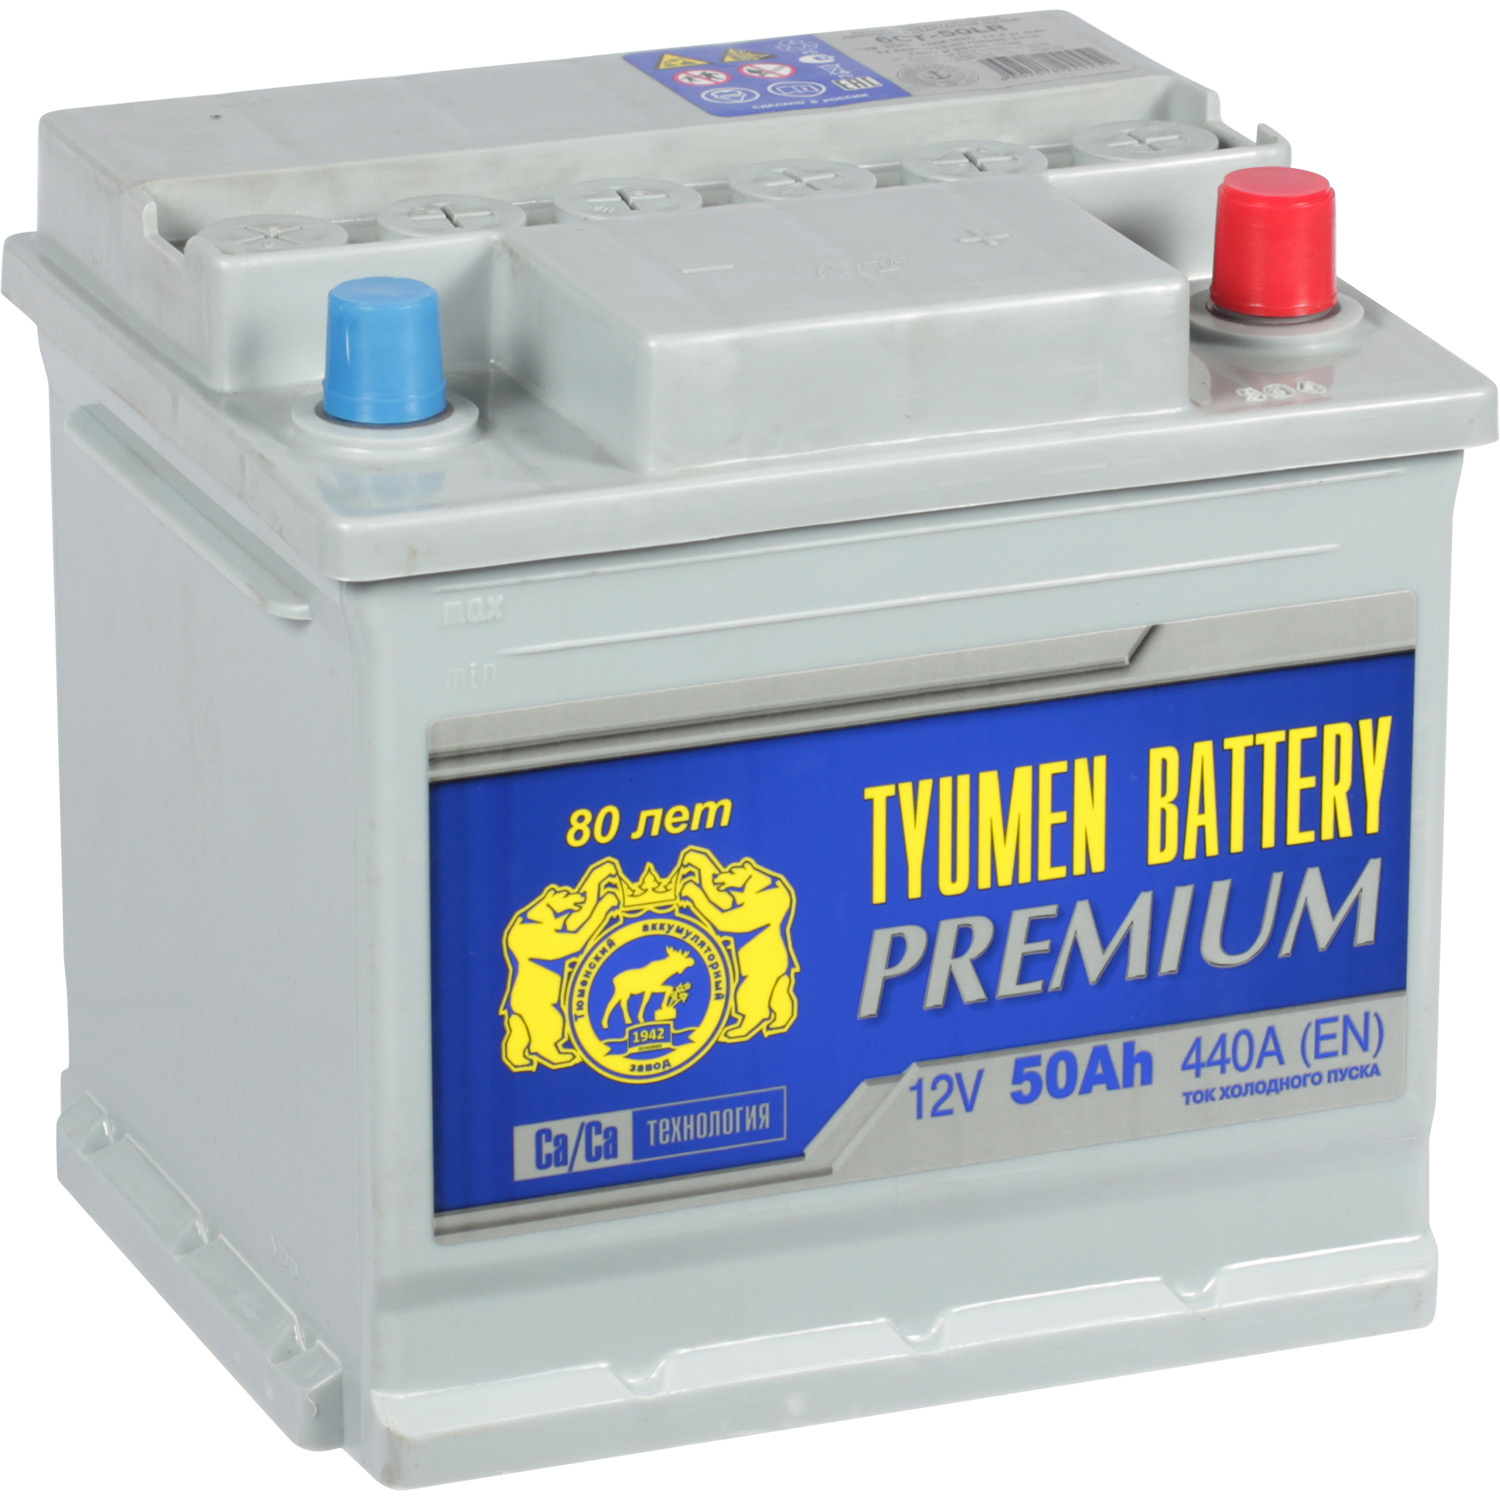 Tyumen Battery Автомобильный аккумулятор Tyumen Battery Premium 50 Ач обратная полярность L1 tyumen battery автомобильный аккумулятор tyumen battery 95 ач прямая полярность d31r